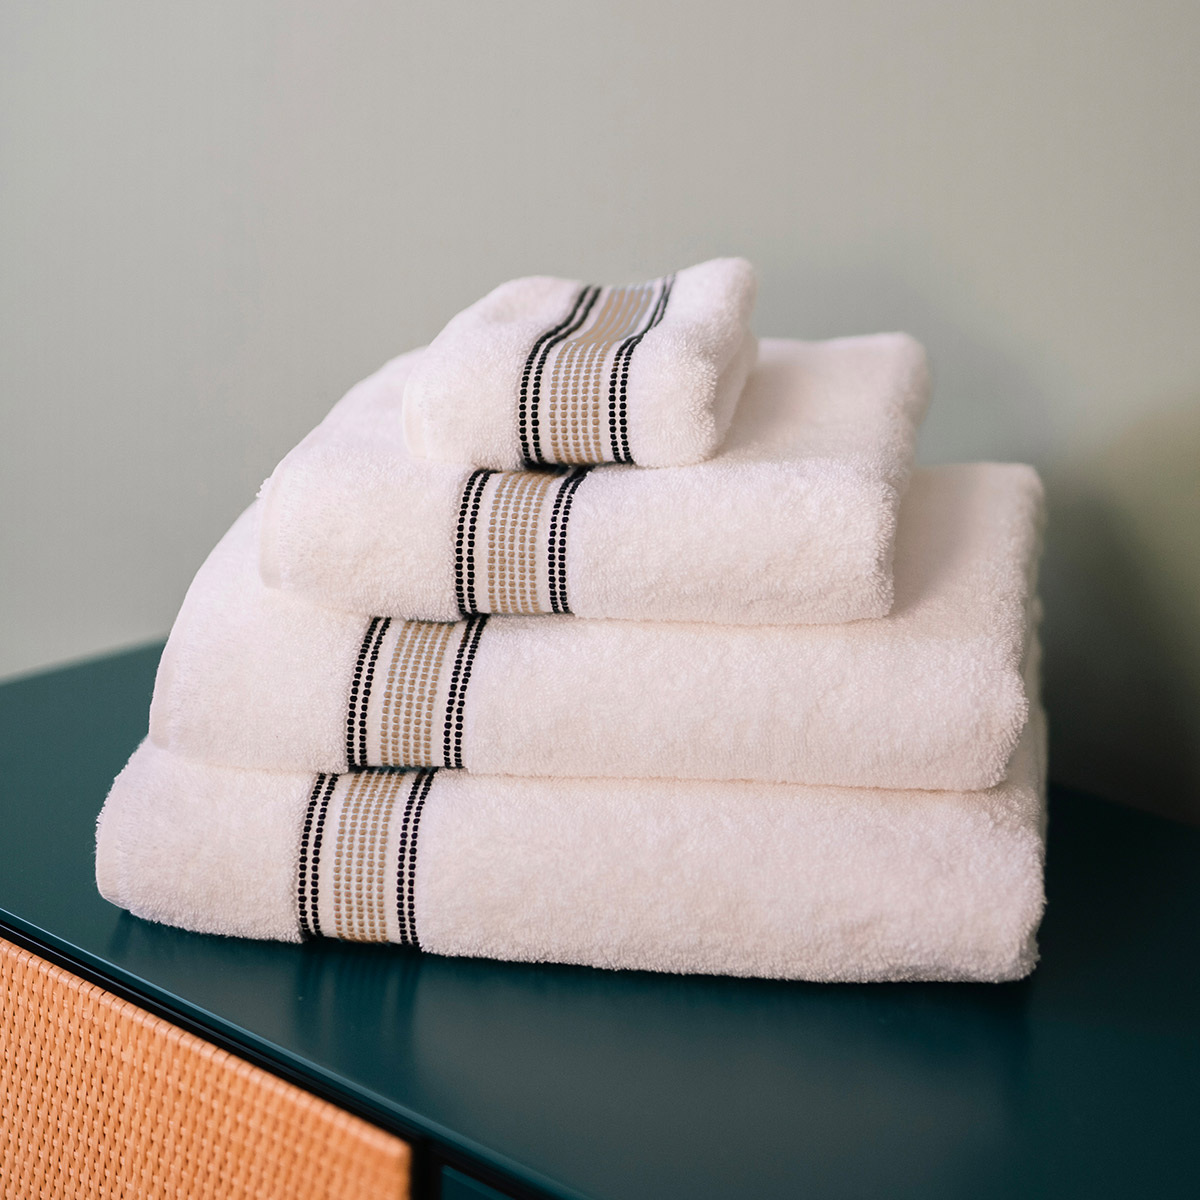 Towel Sicilia, Linen - different sizes - Organic cotton - image 3